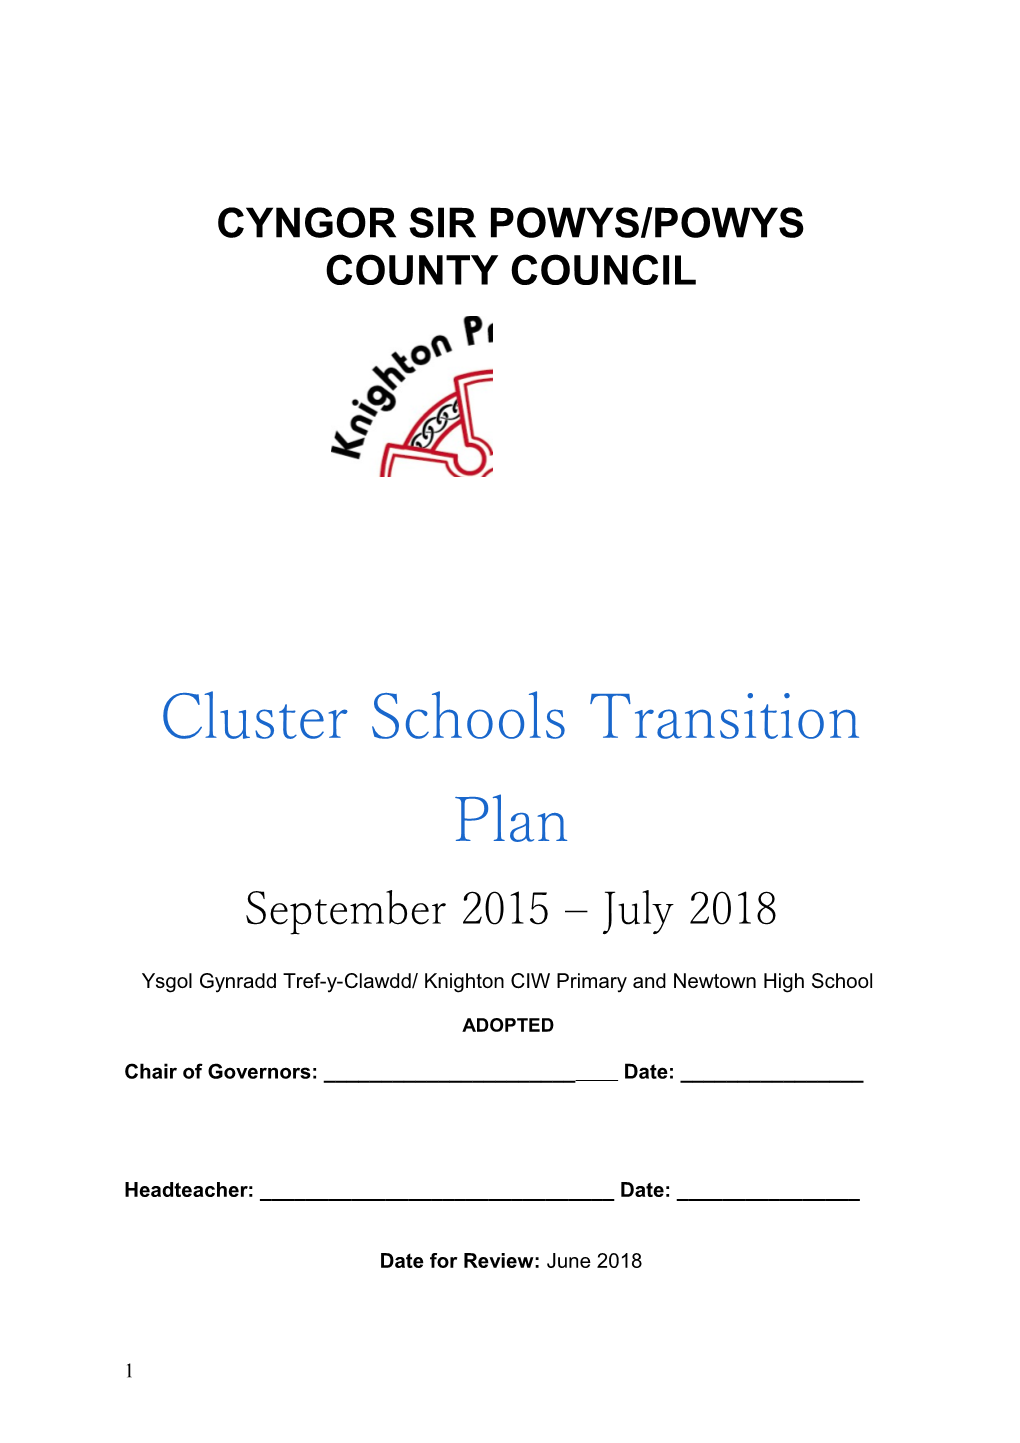 Cyngor Sir Powys/Powys County Council